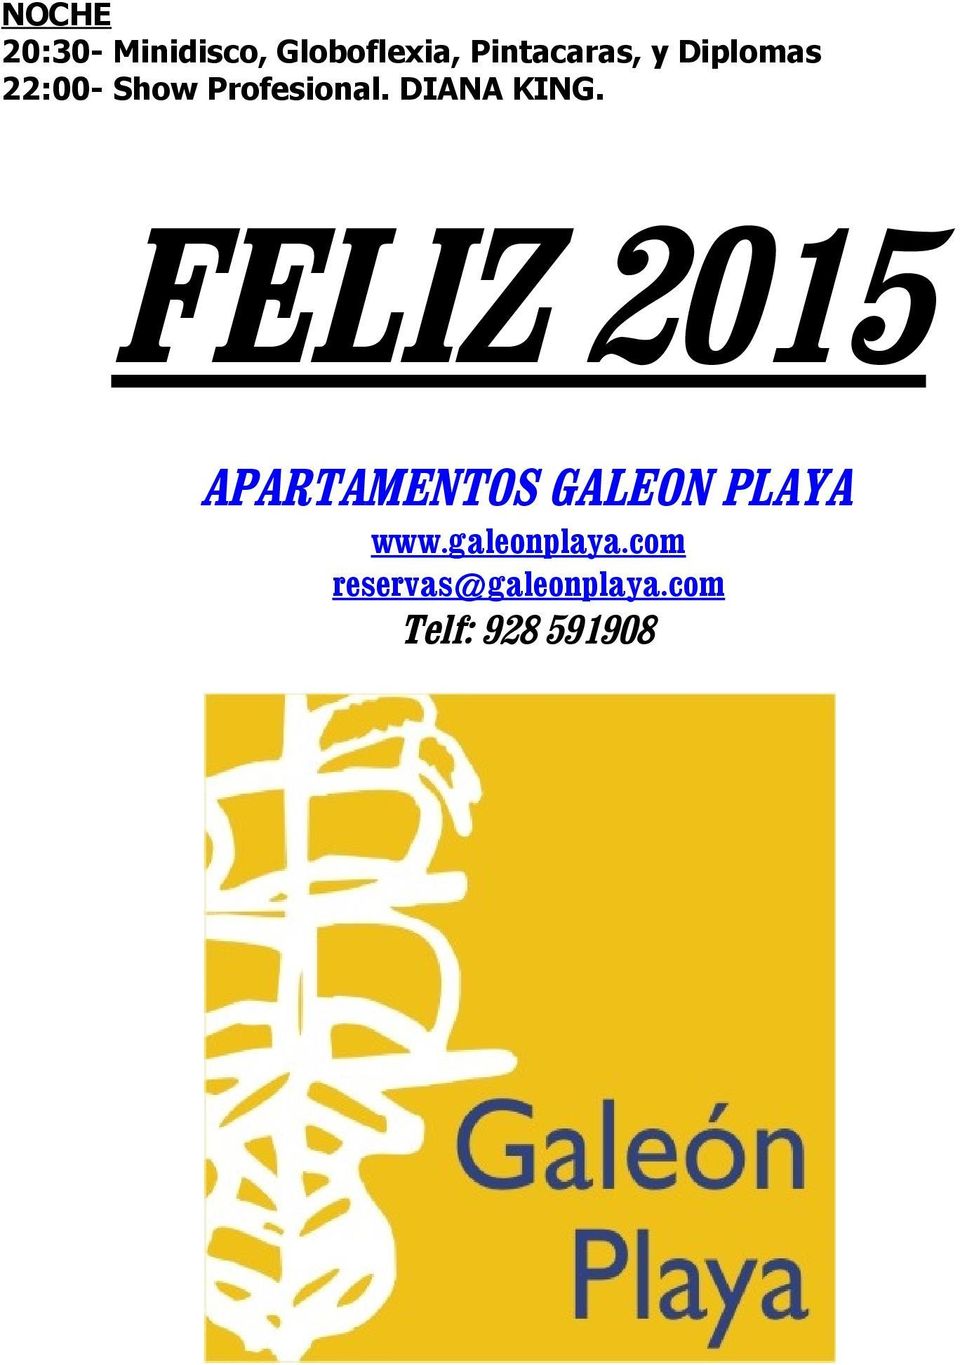 FELIZ 2015 APARTAMENTOS GALEON